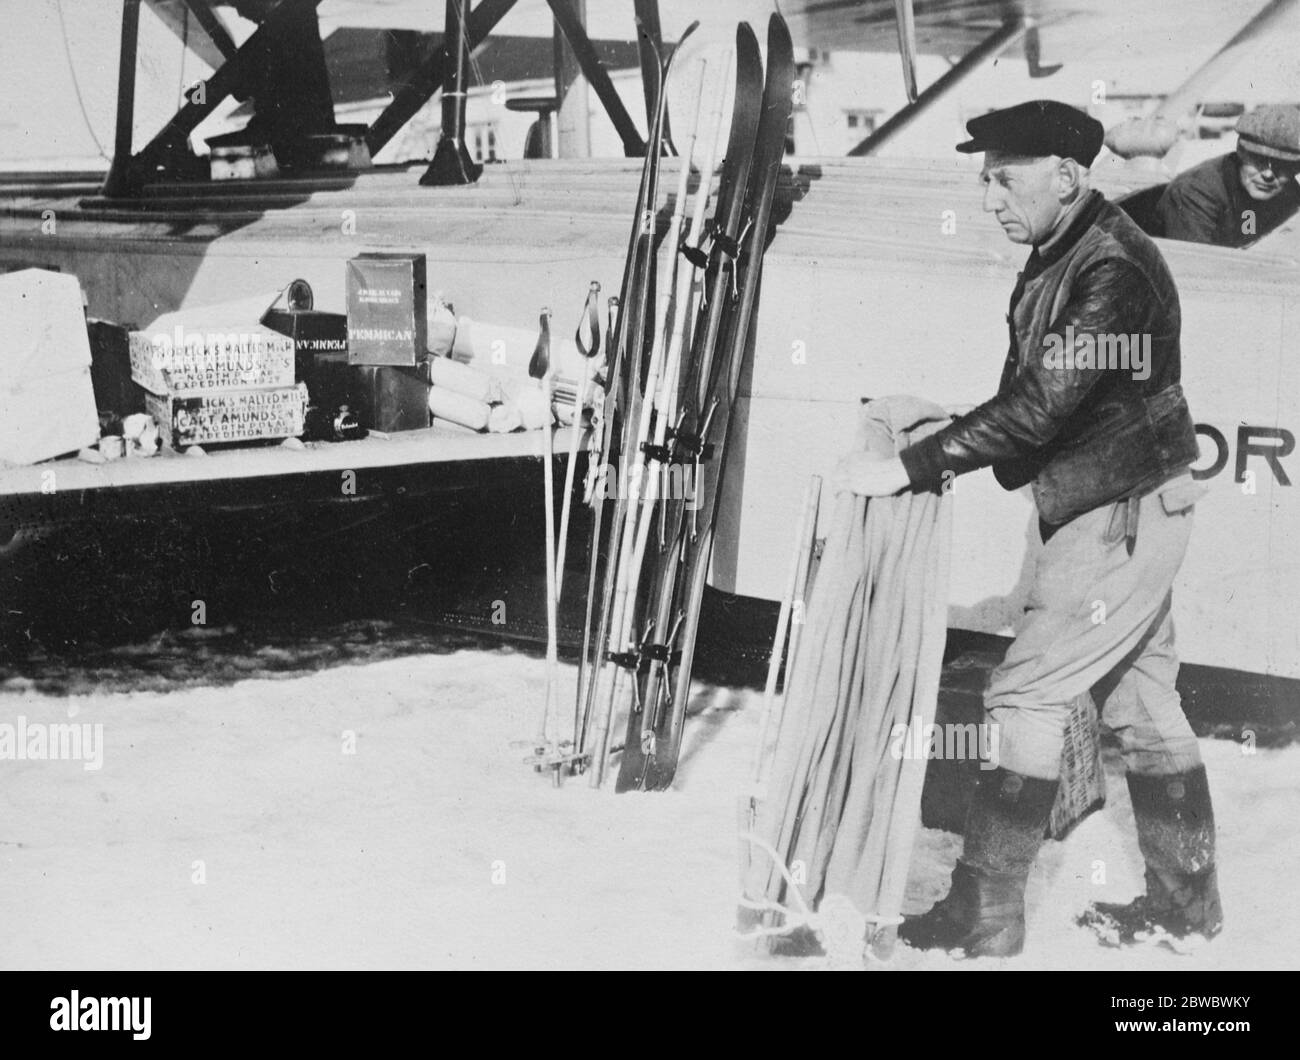 Mistero di Amundsen , prime fotografie dell'inizio del volo polare Amundsen Ellsworth Amundsen che sovrintende al caricamento di forniture alimentari e attrezzature per marcare poco prima dell'inizio del 17 giugno 1925 Foto Stock